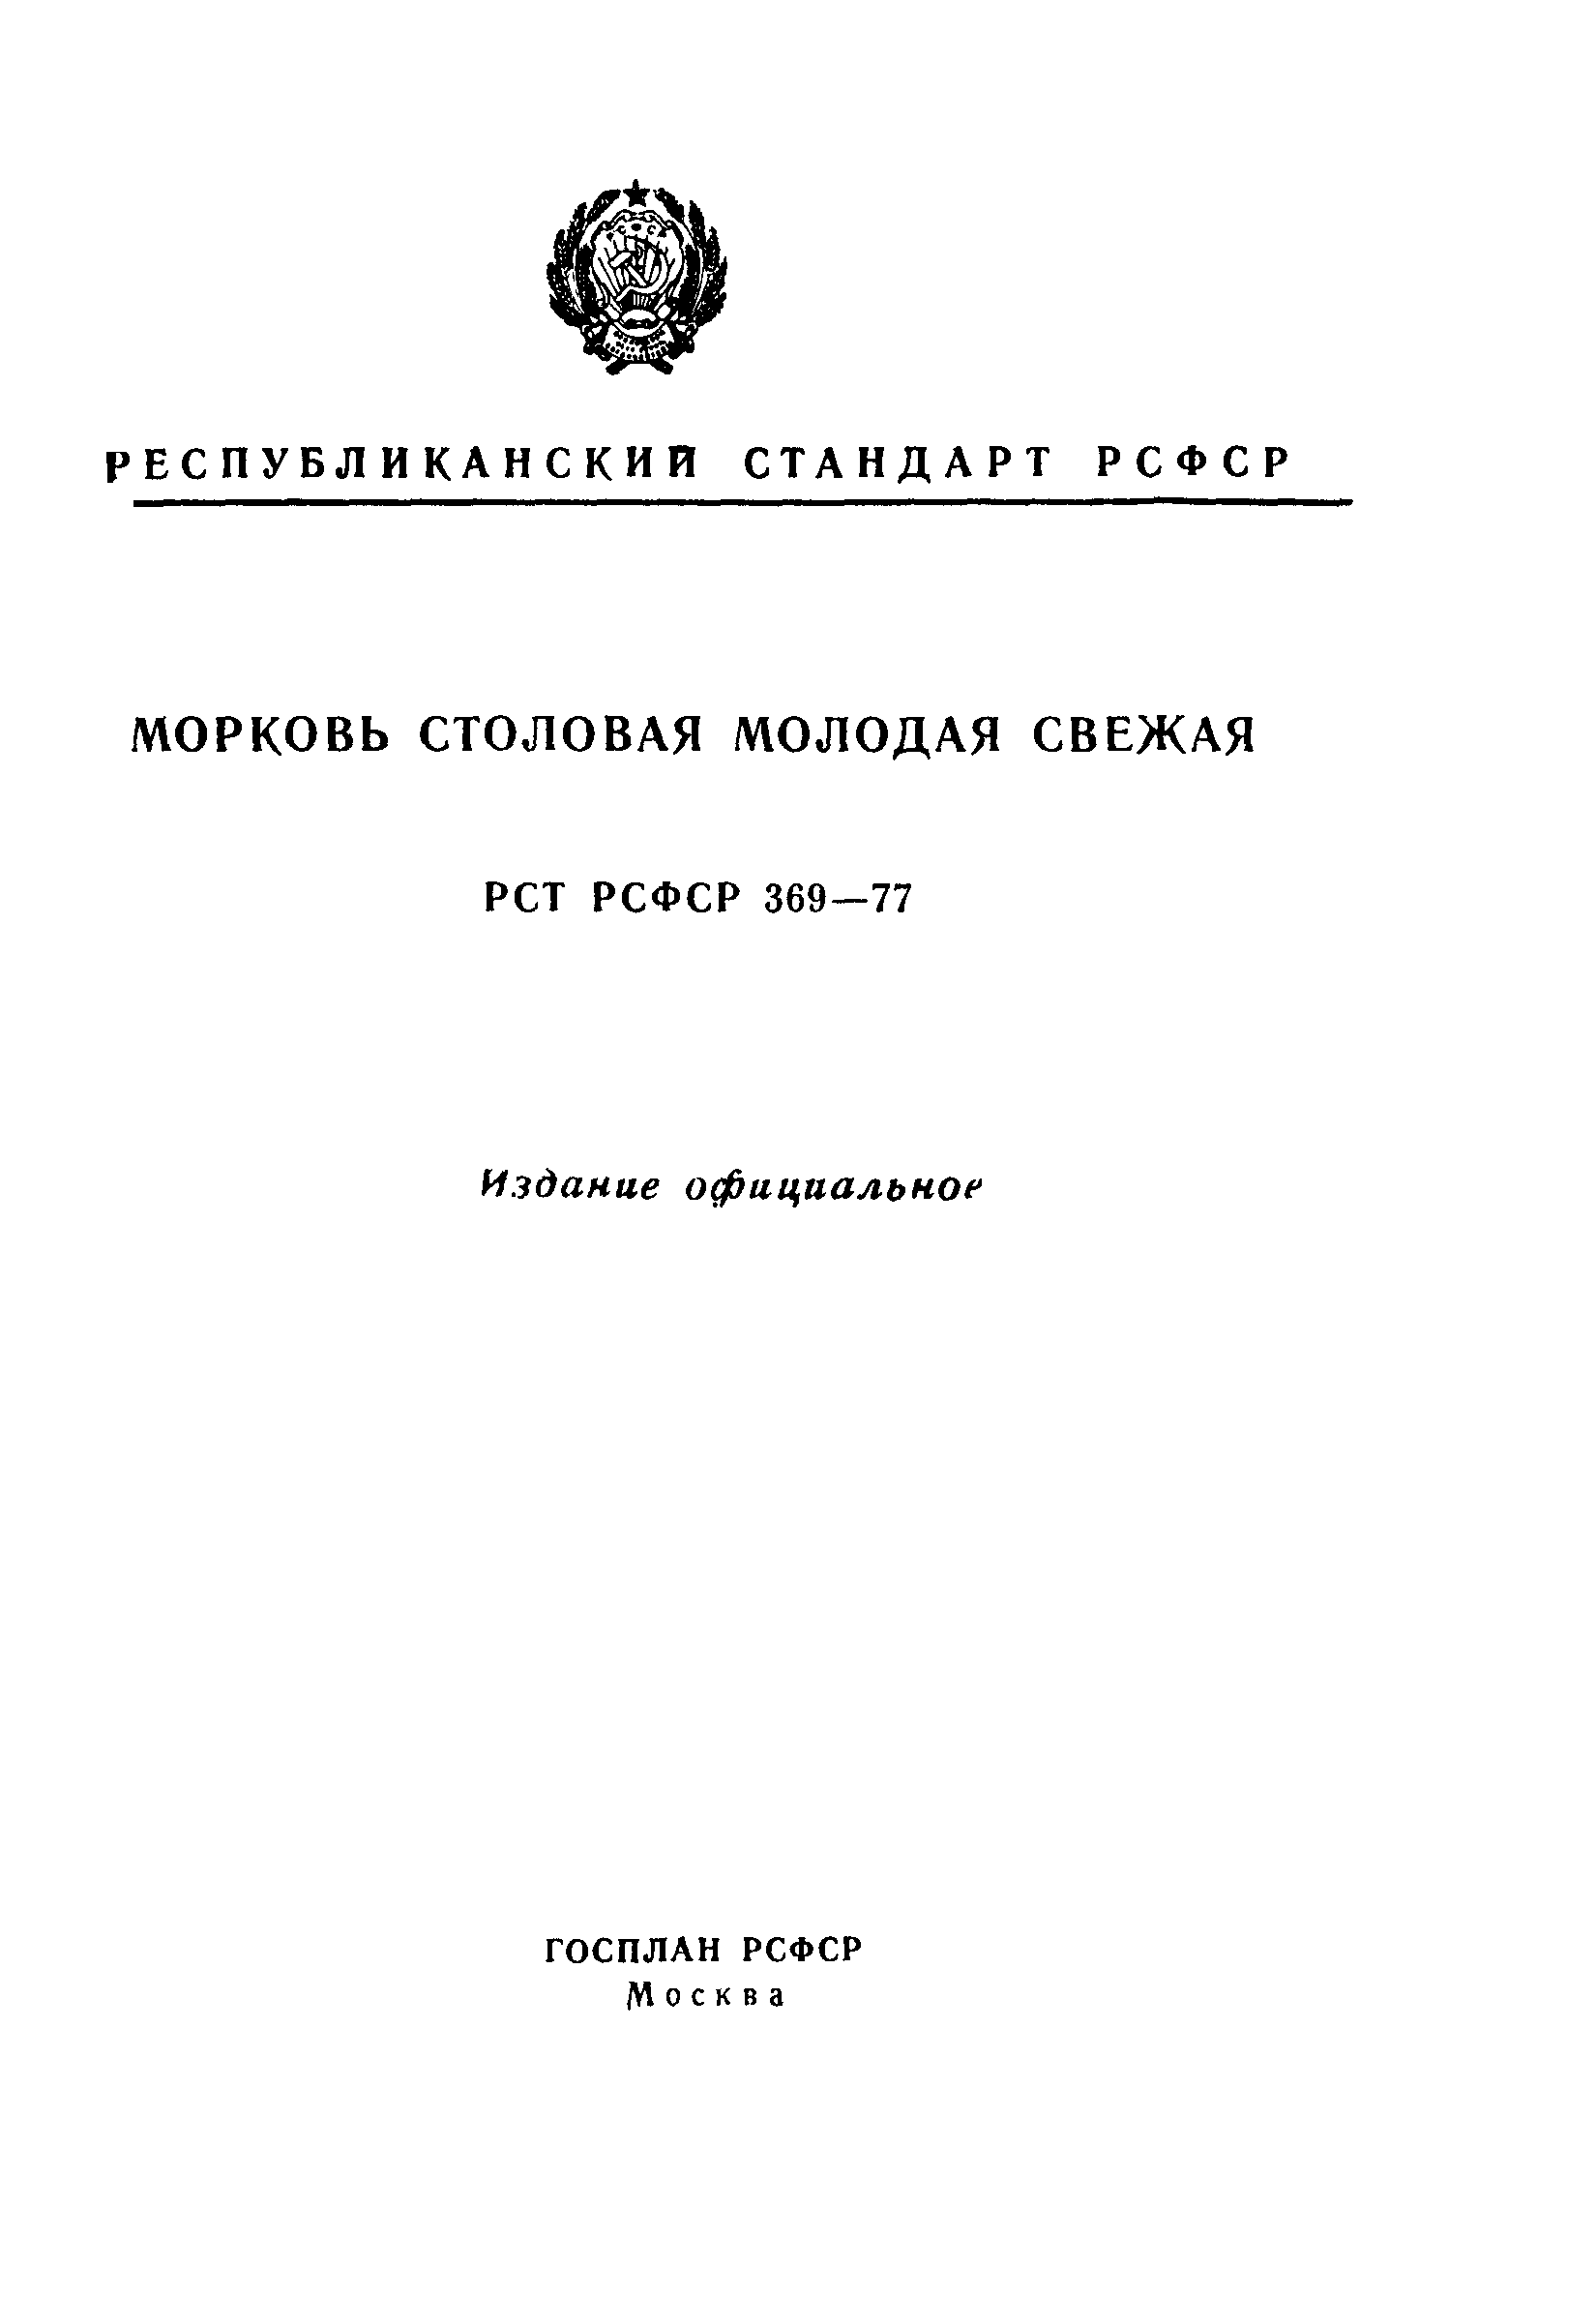 РСТ РСФСР 369-77